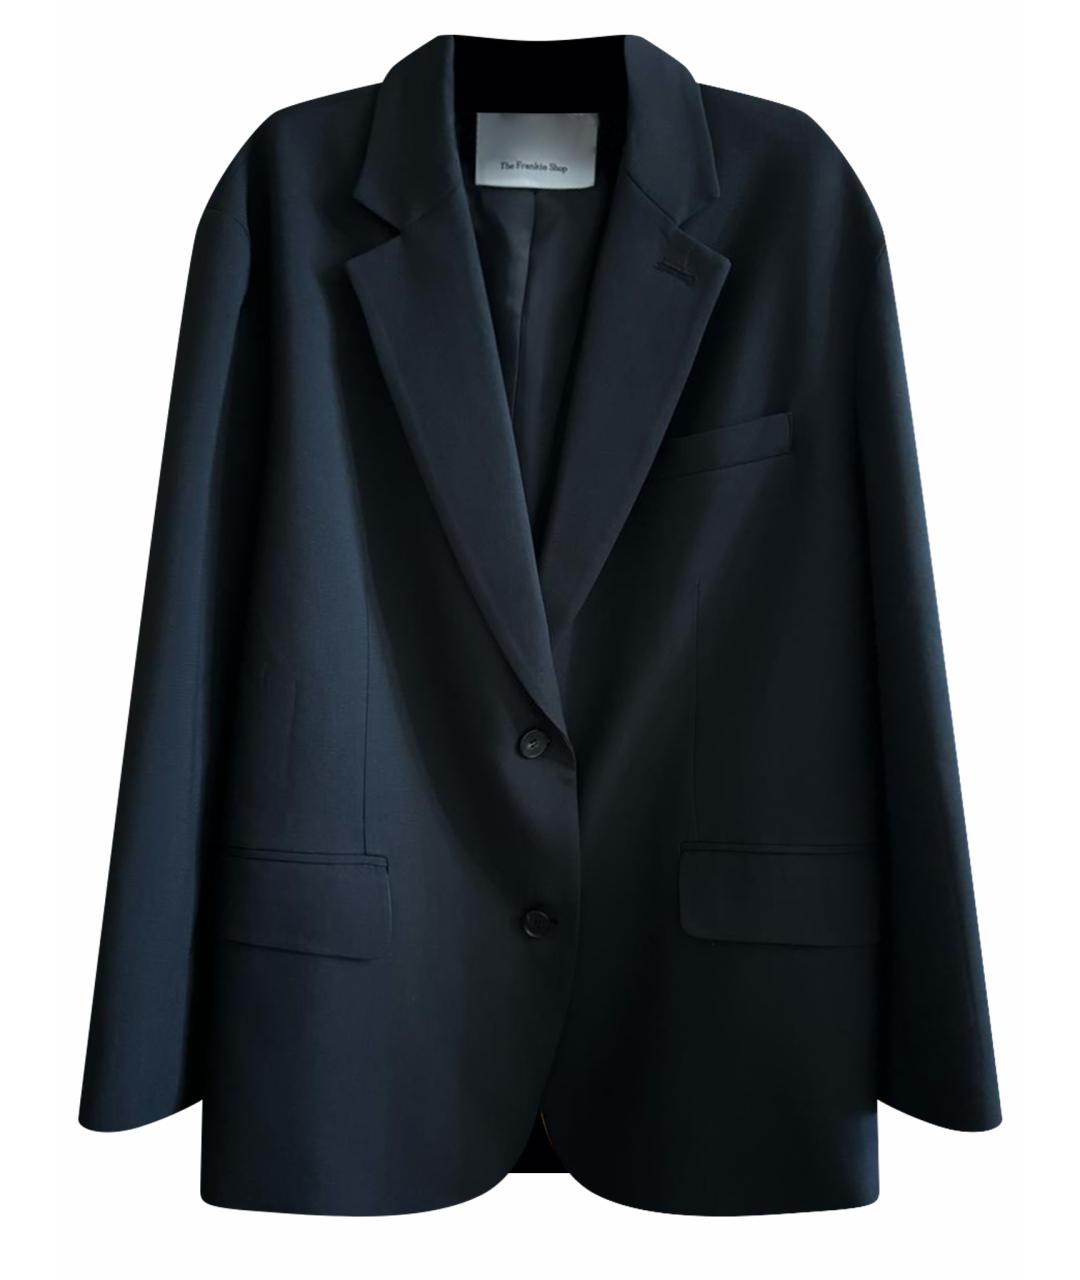 THE FRANKIE SHOP Черный полиэстеровый жакет/пиджак, фото 1